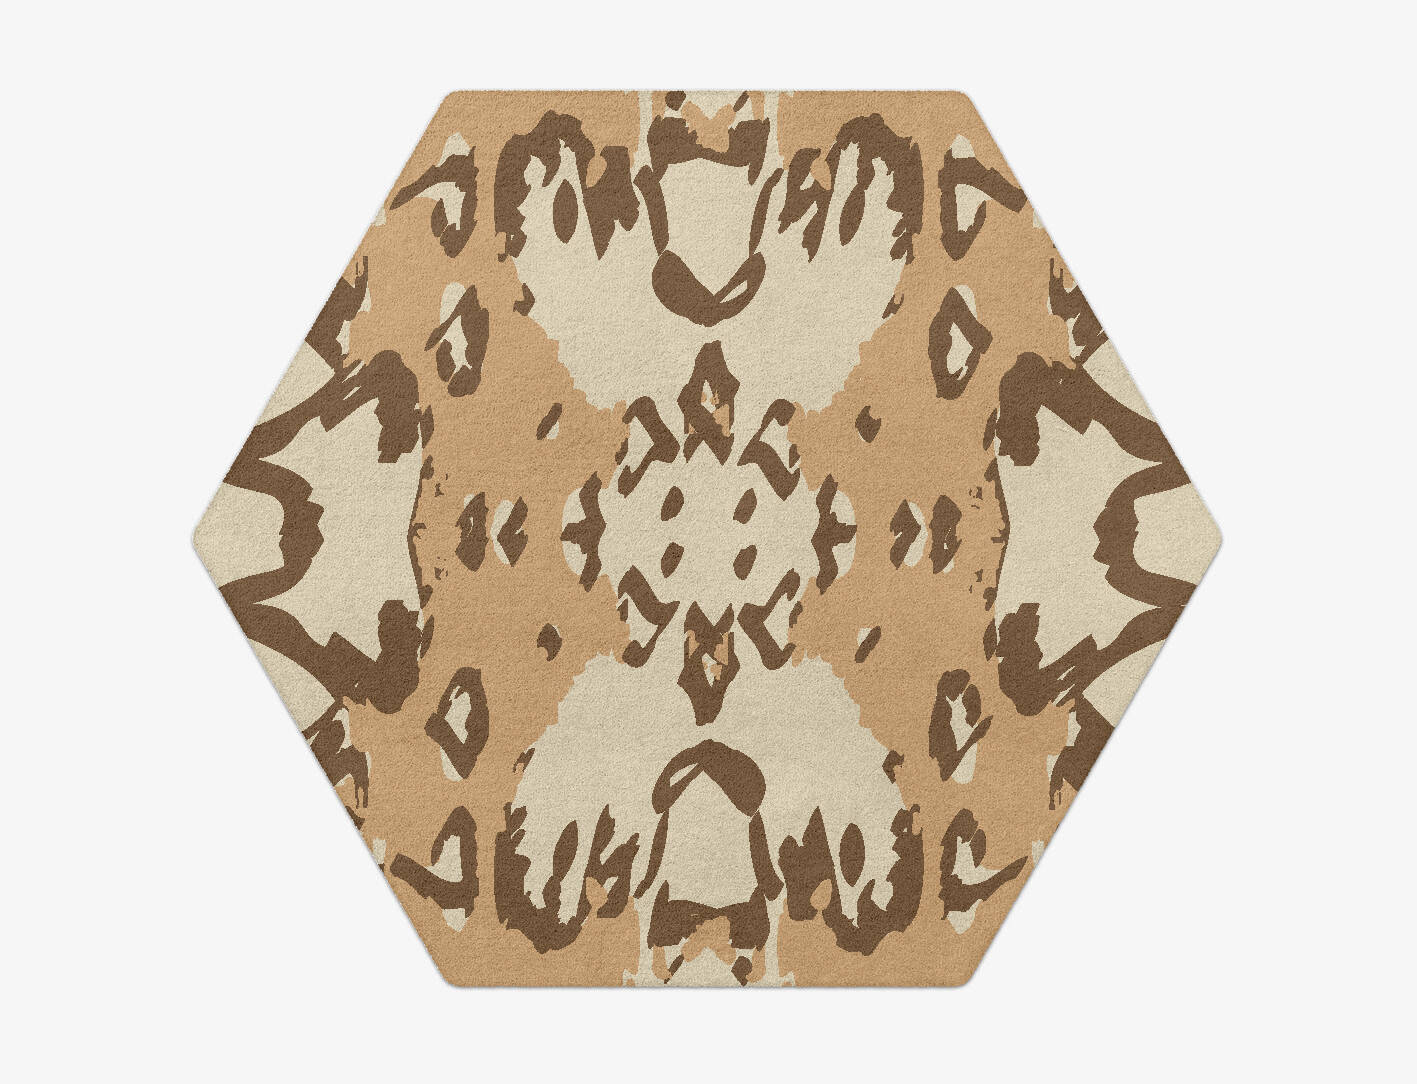 Kanga Abstract Hexagon Hand Tufted Pure Wool Custom Rug by Rug Artisan